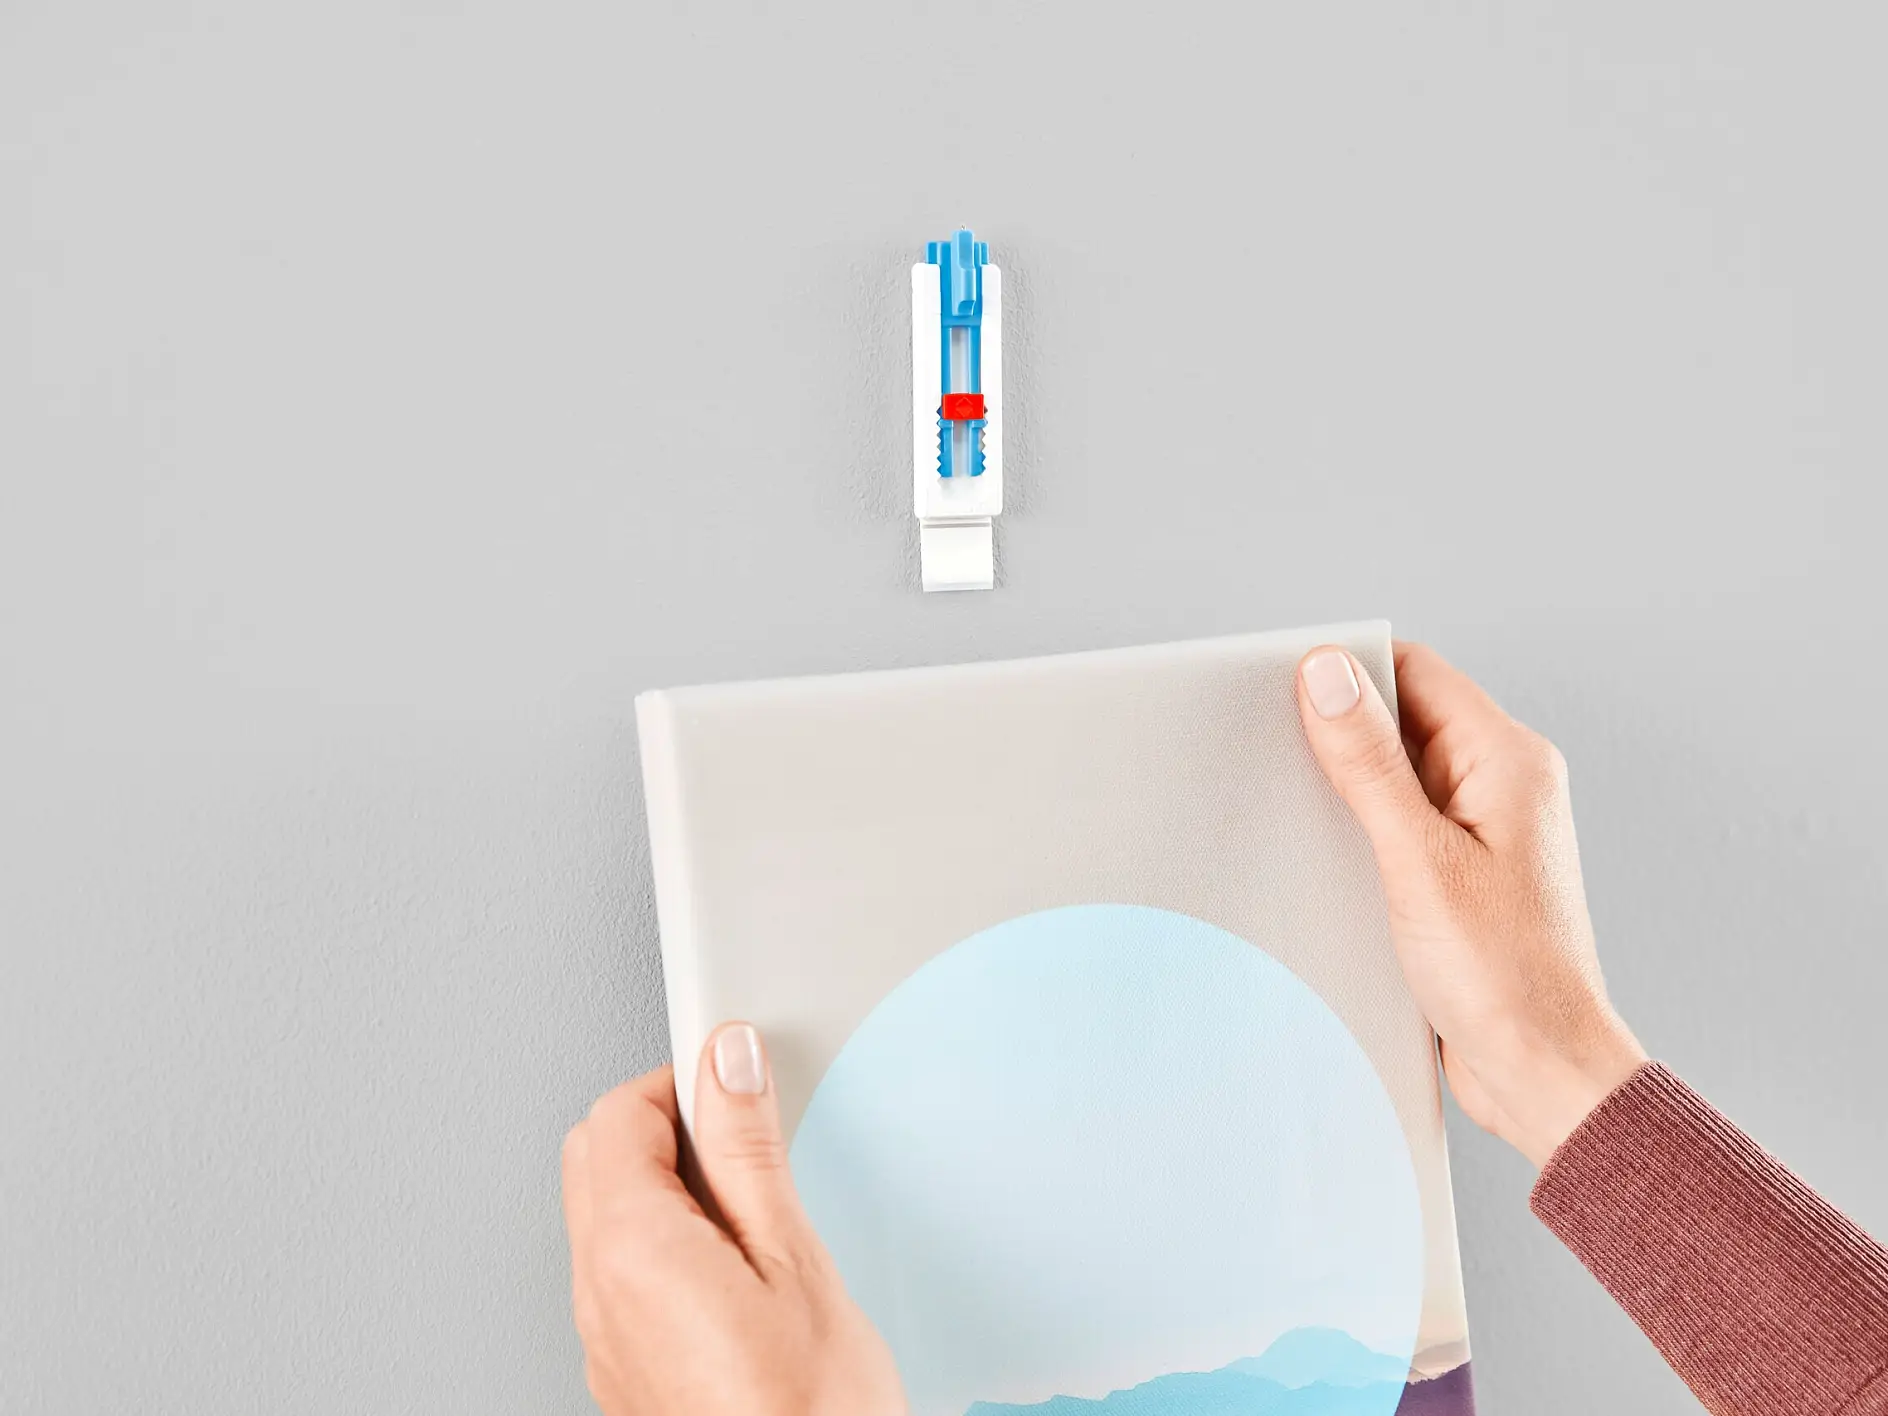 [en-en] tesa SMS adjustable nail for canvas for wallpaper up to 1 kg, step 5 of 6